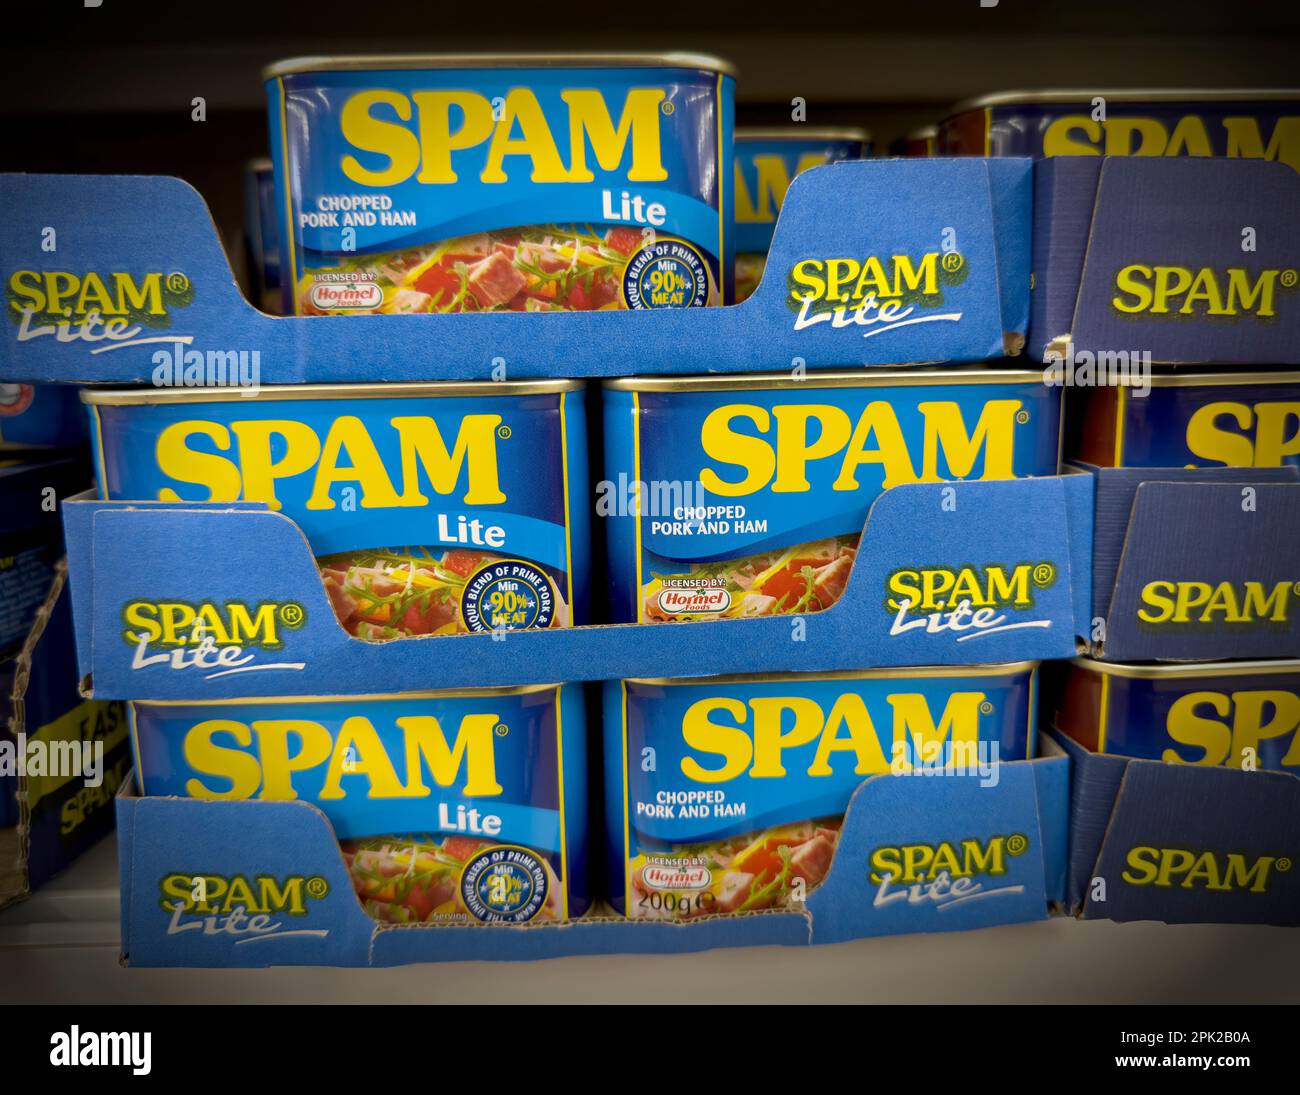 Dosen Spam Lite, Schweinefleisch und Schinken, lizenziert von Hormel Foods Stockfoto